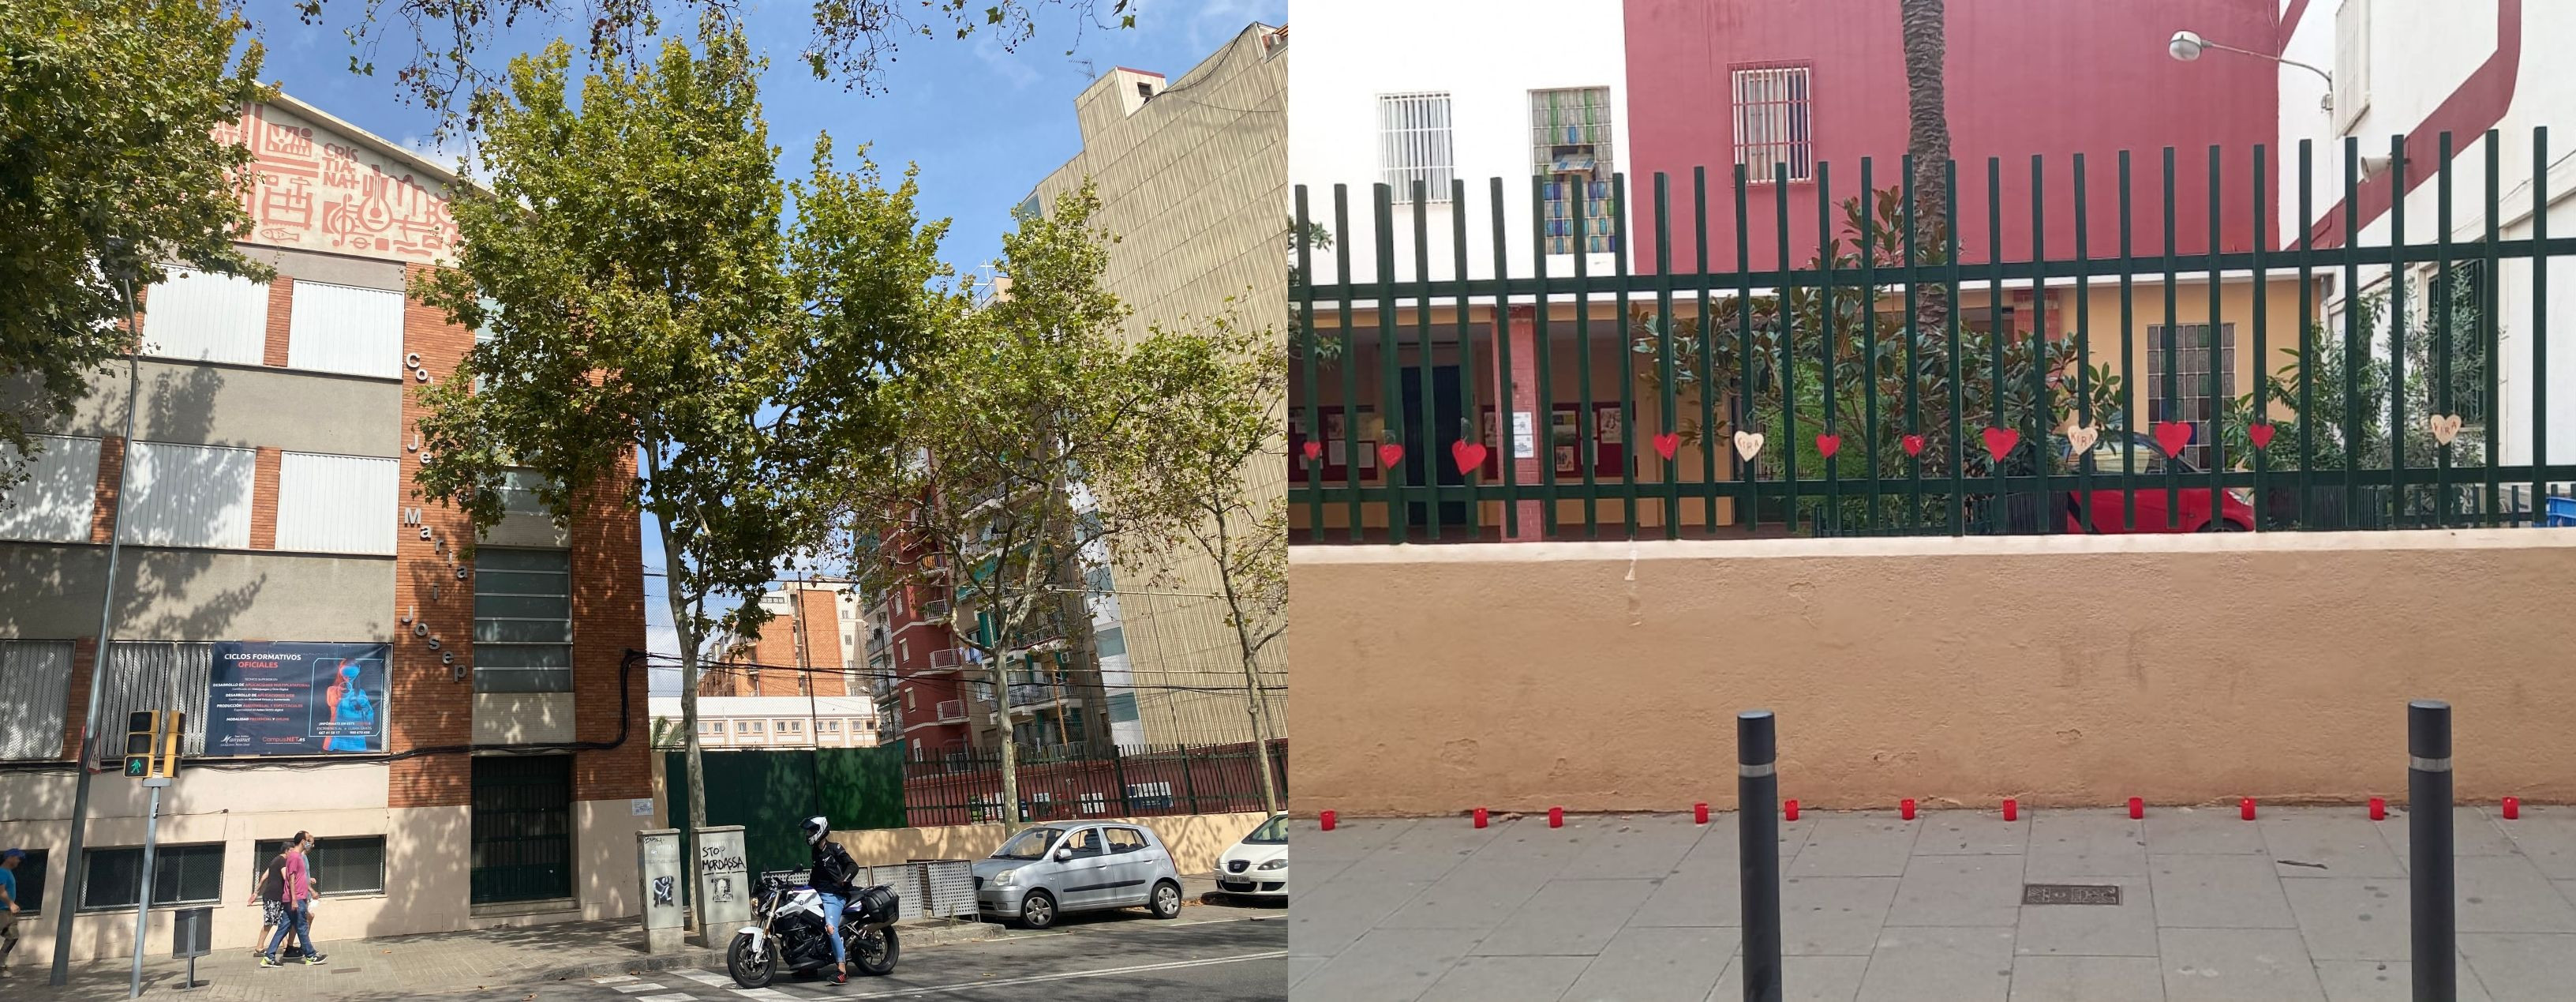 Puertas de la escuela Pare Manyanet de Sant Andreu / METRÓPOLI